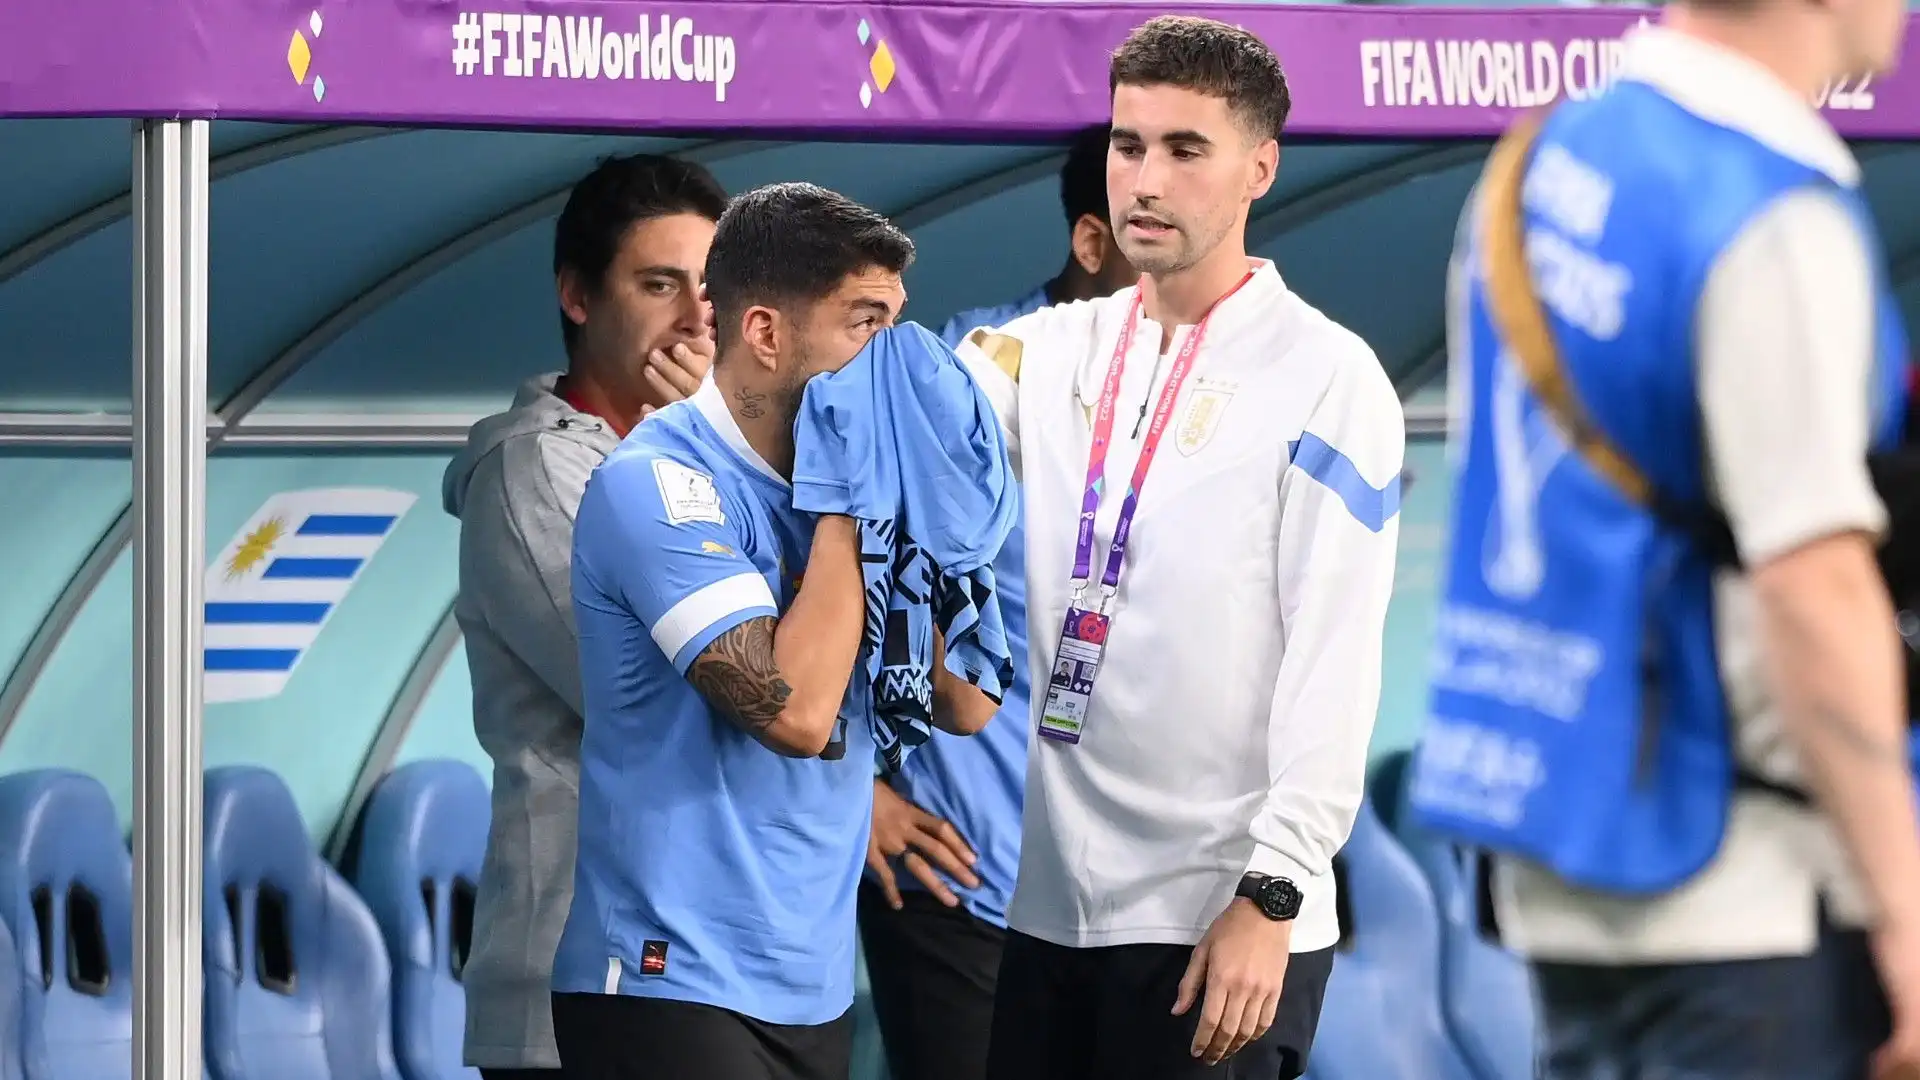 Mondiale, Luis Suarez distrutto: le foto dell'attaccante in lacrime